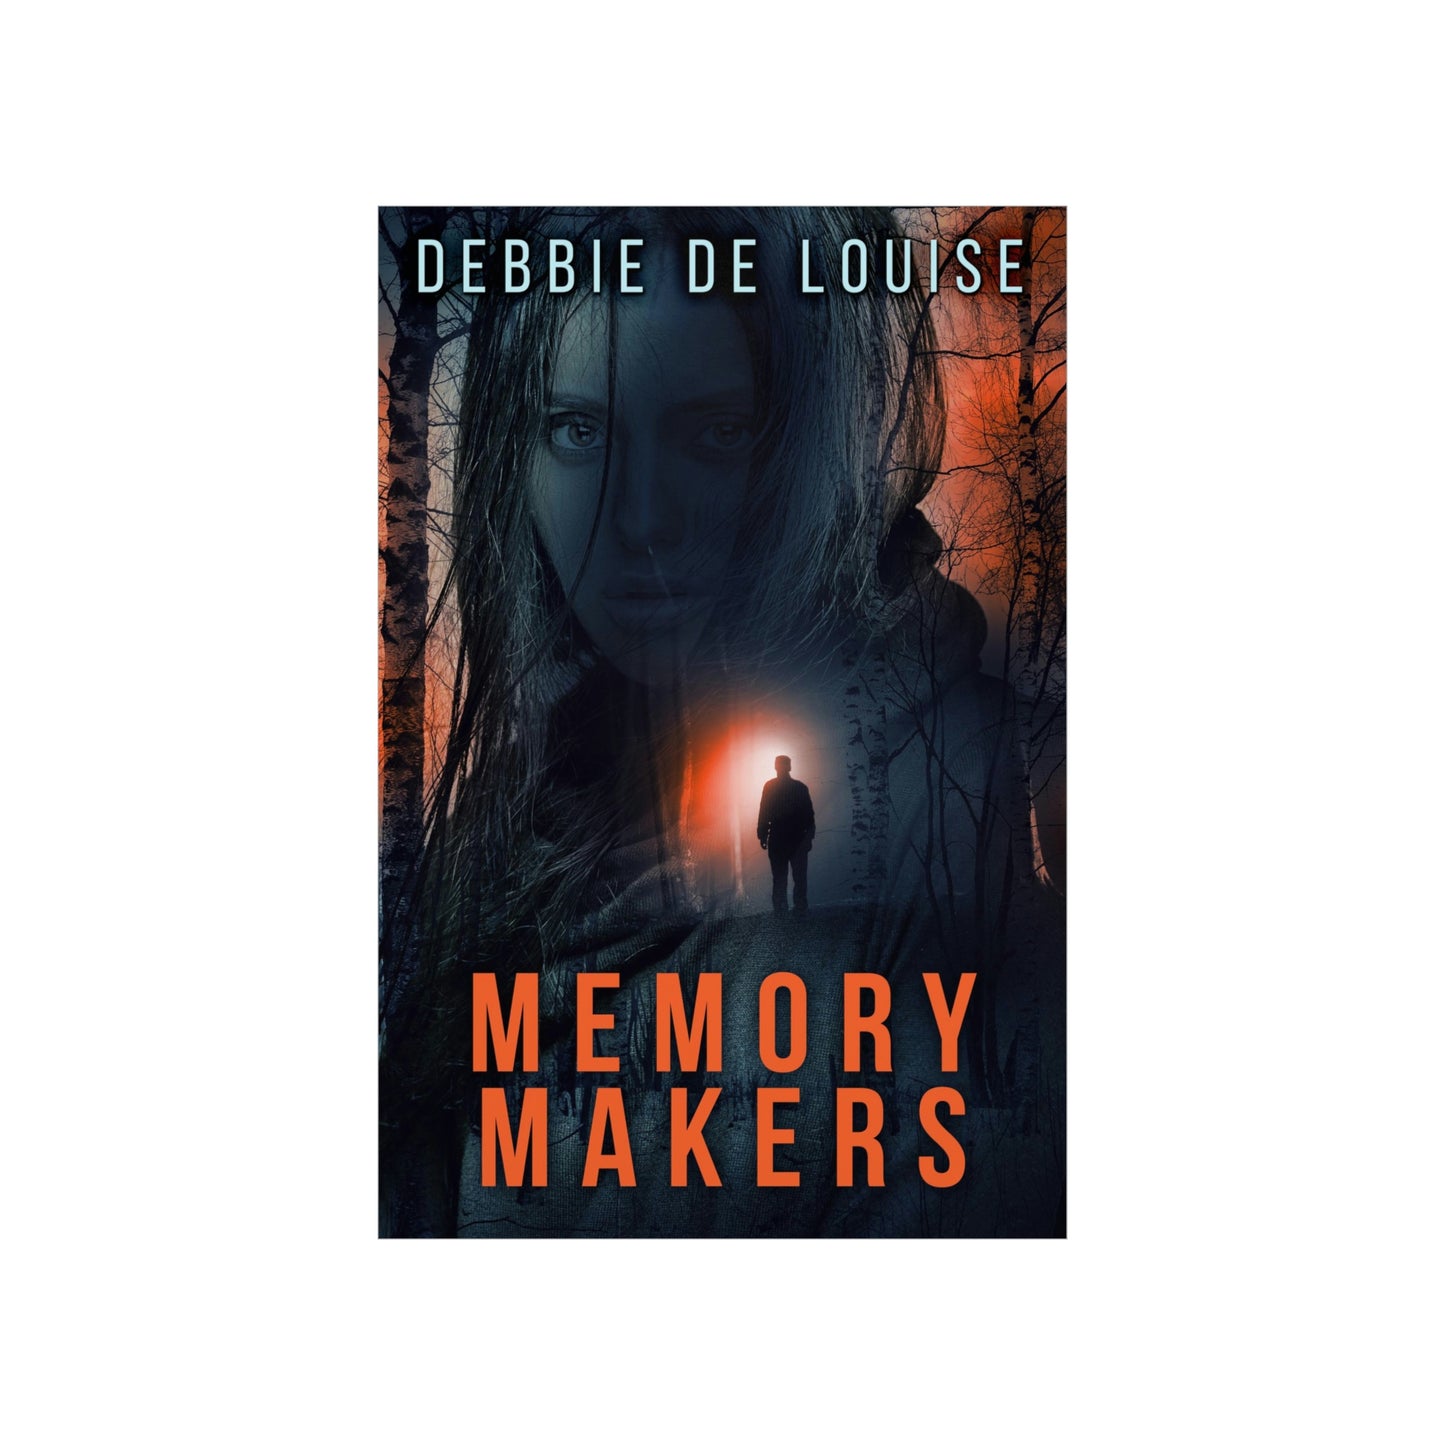 Memory Makers - Matte Poster